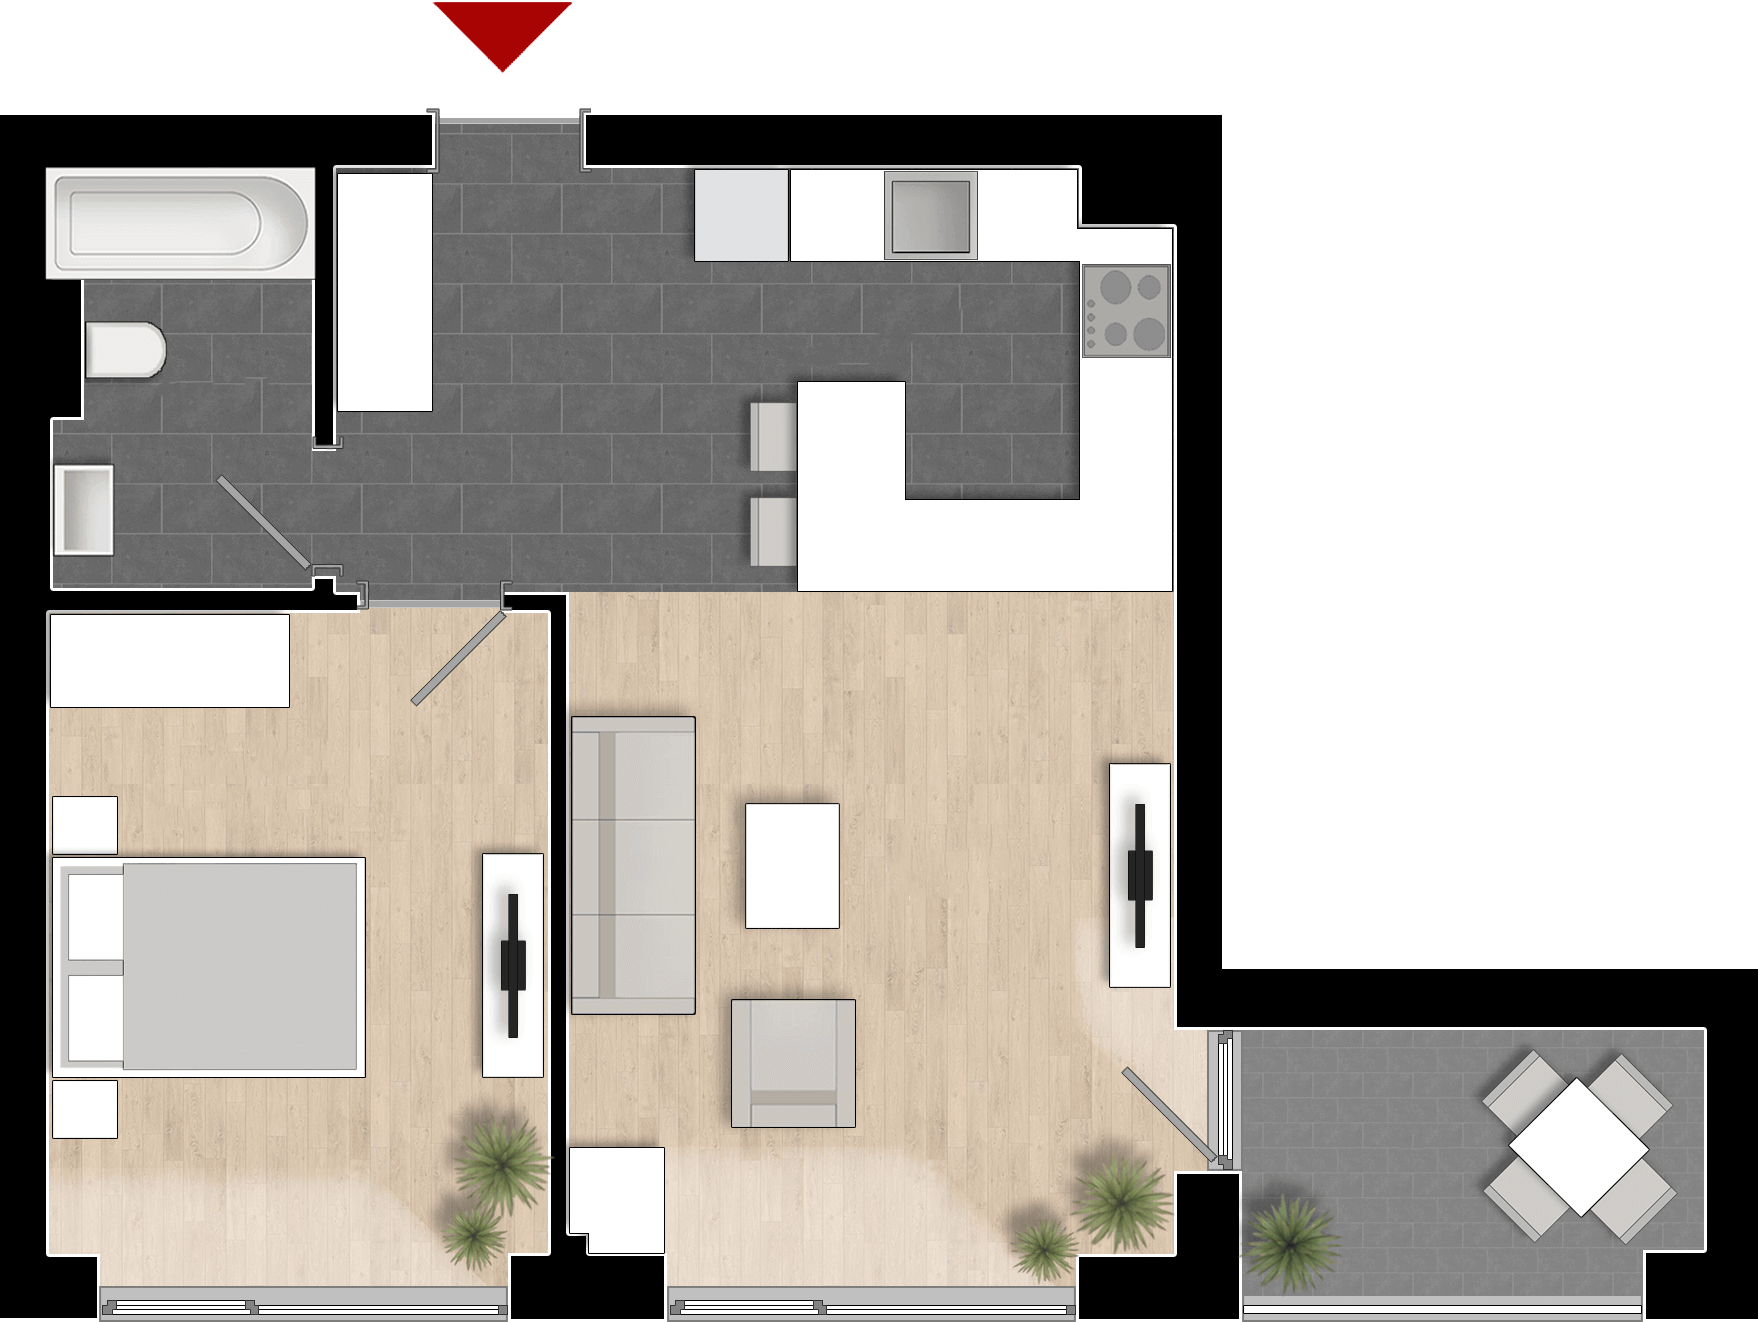  Apartament 401, Tip de apartament 1A cu 2 camere 